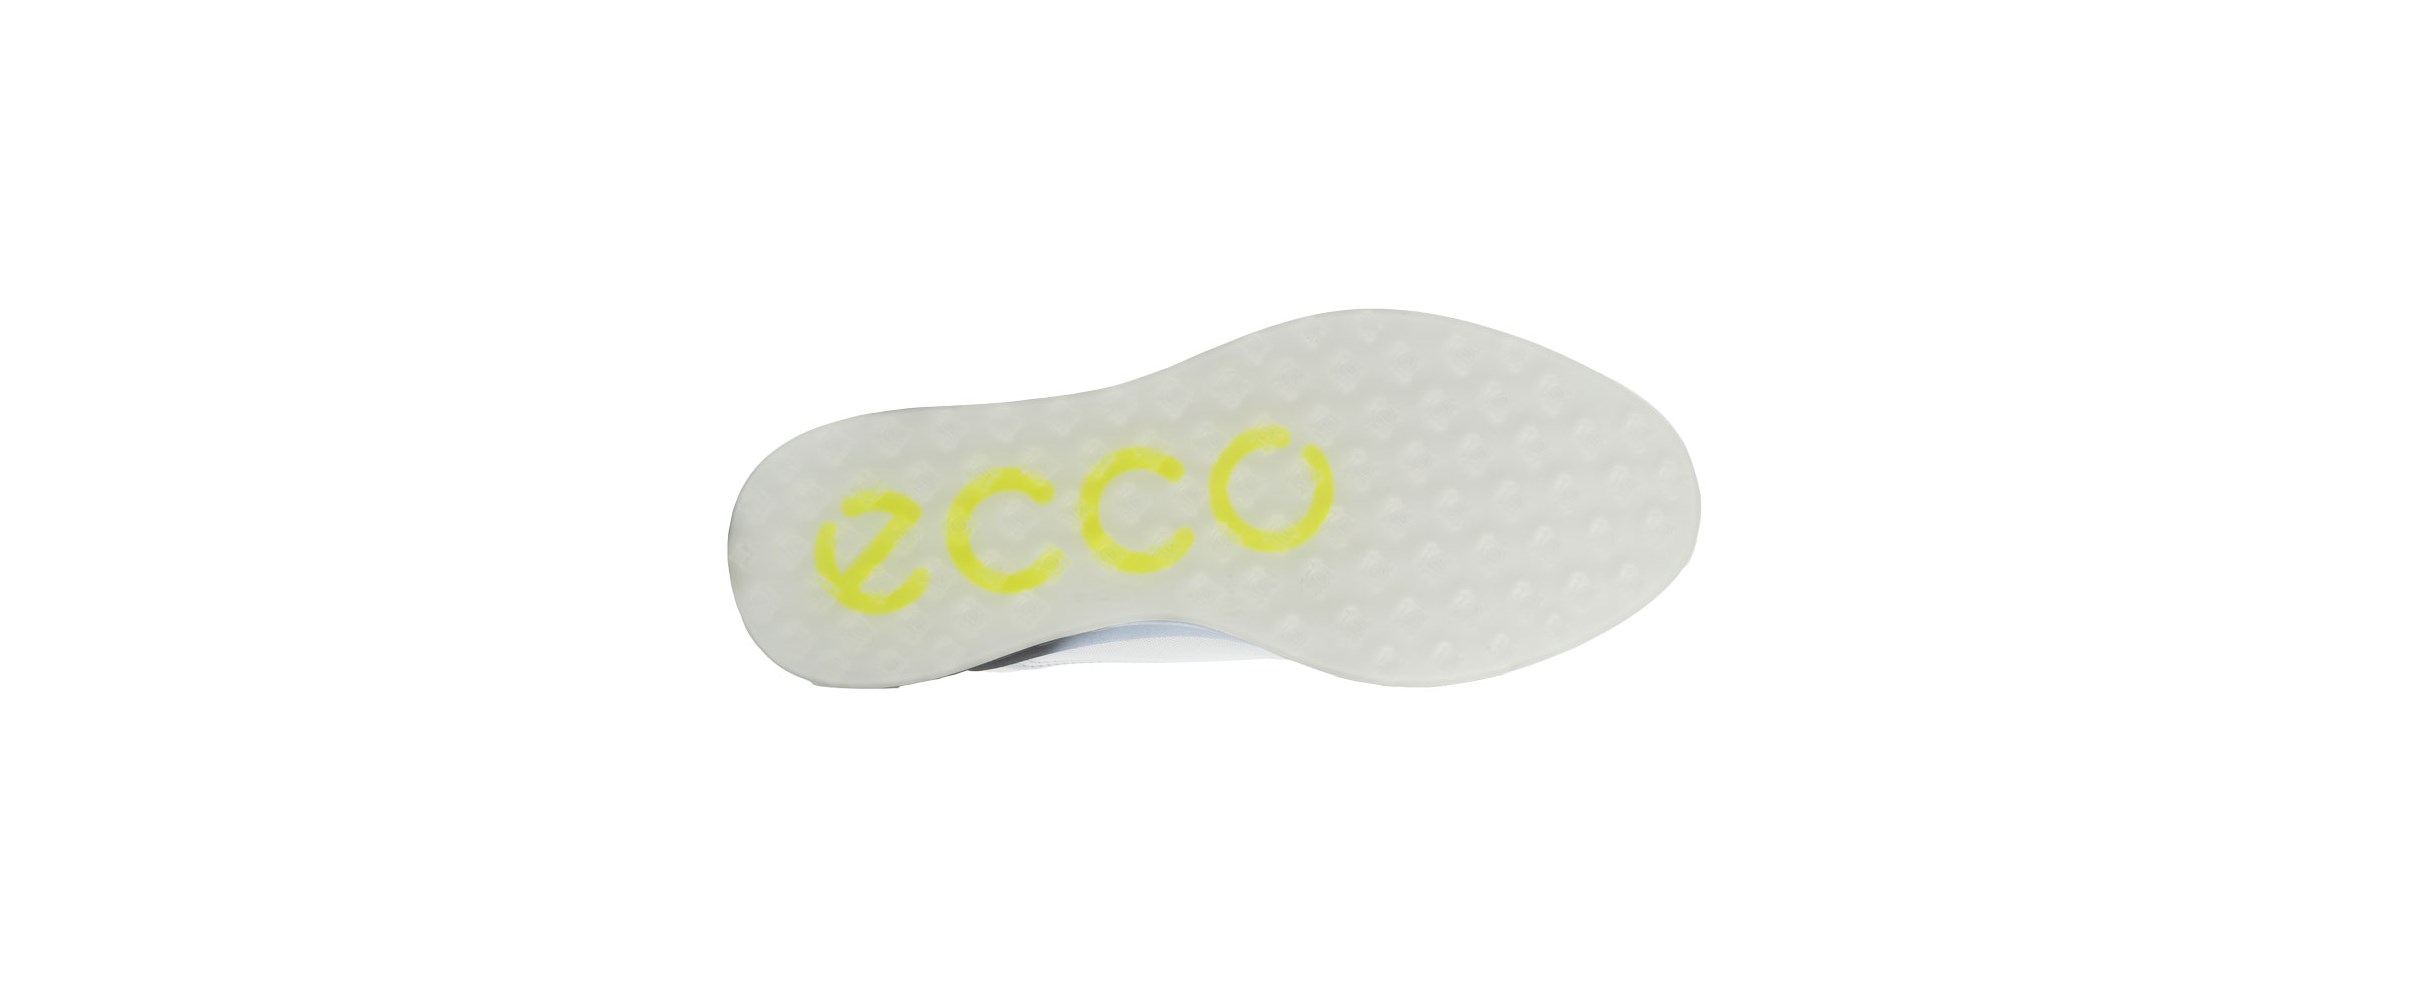 ECCO GOLF S-THREE pánské golfové boty WHITE/BLACK/AIR velikost 40, 41, 42, 43, 44, 45, 46, 47 - zvìtšit obrázek